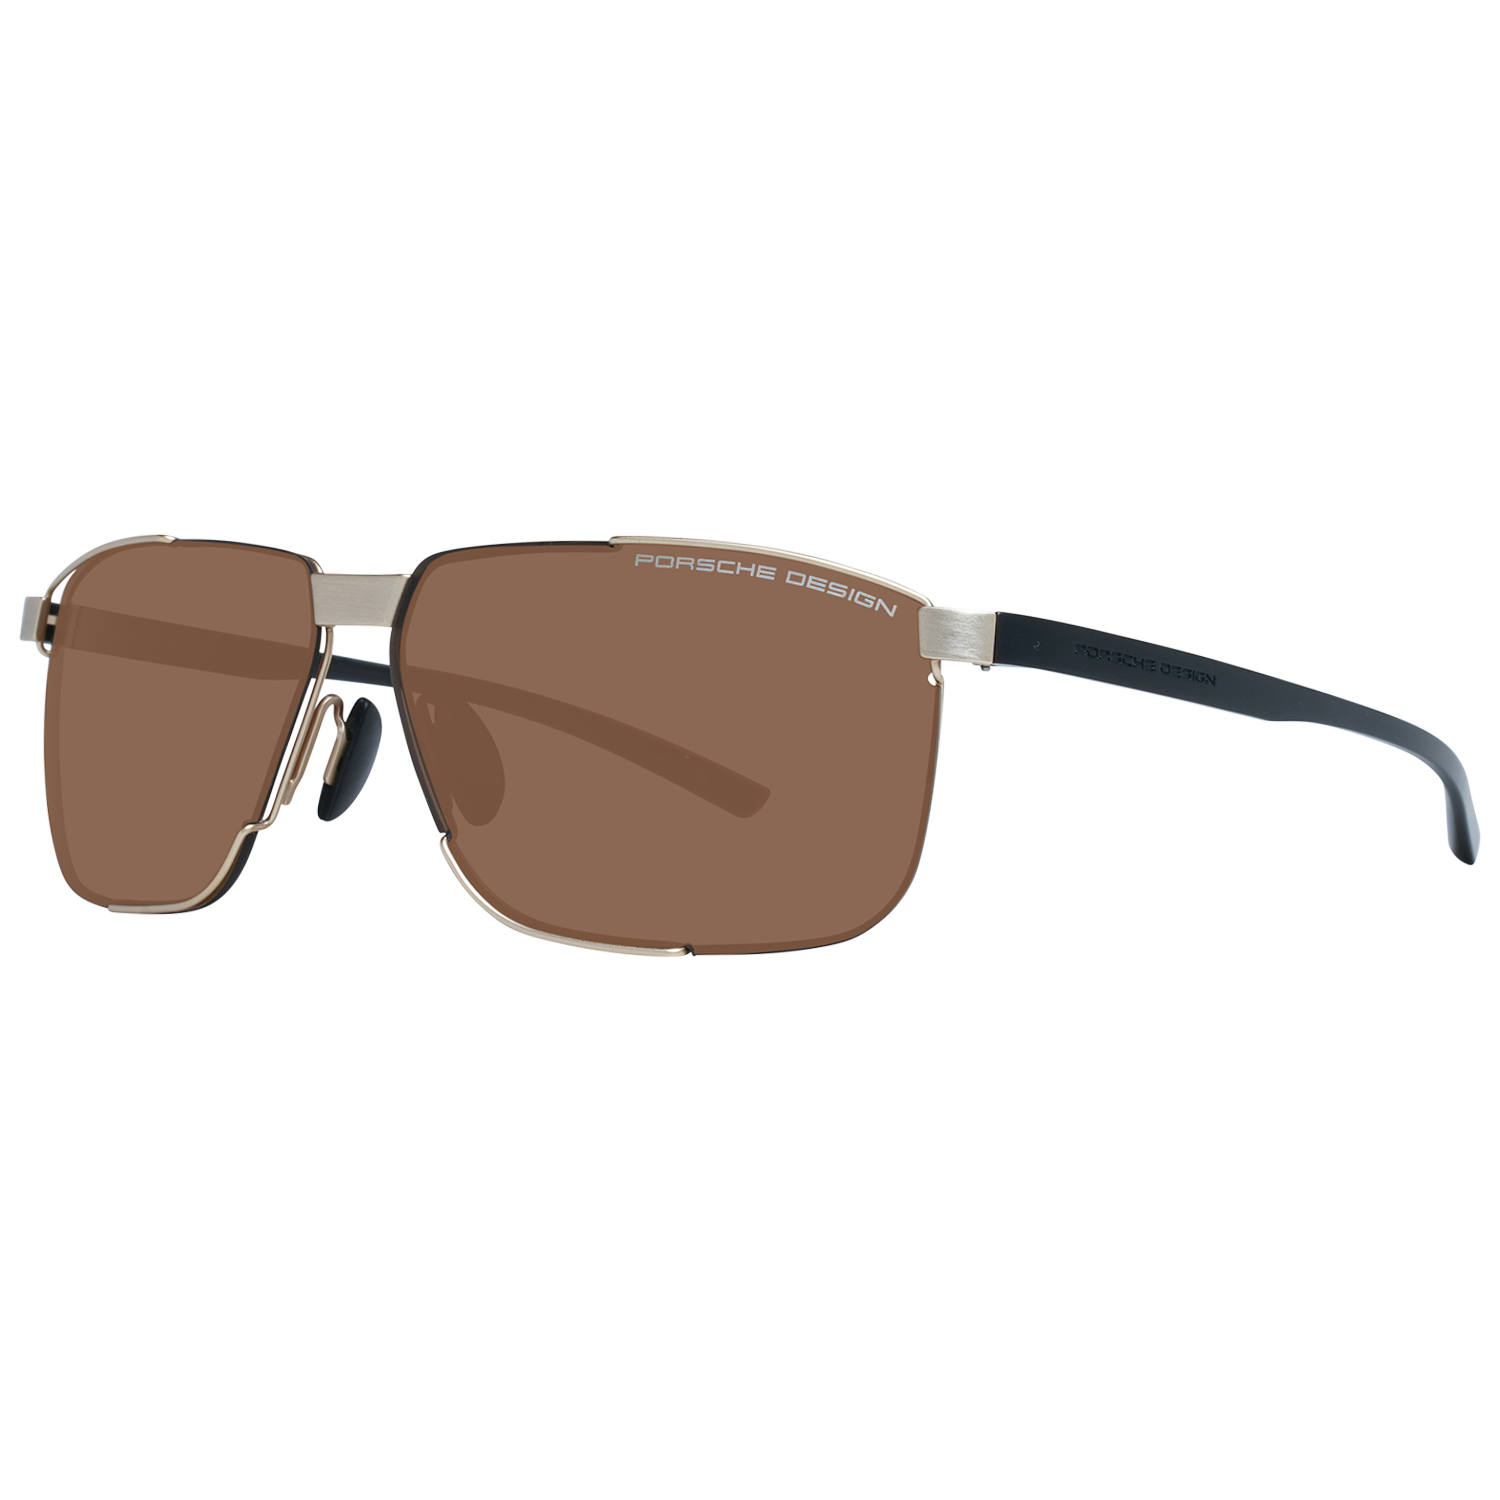 Porsche Design Sunglasses Porsche Design Sunglasses P8680 B 61 Eyeglasses Eyewear UK USA Australia 